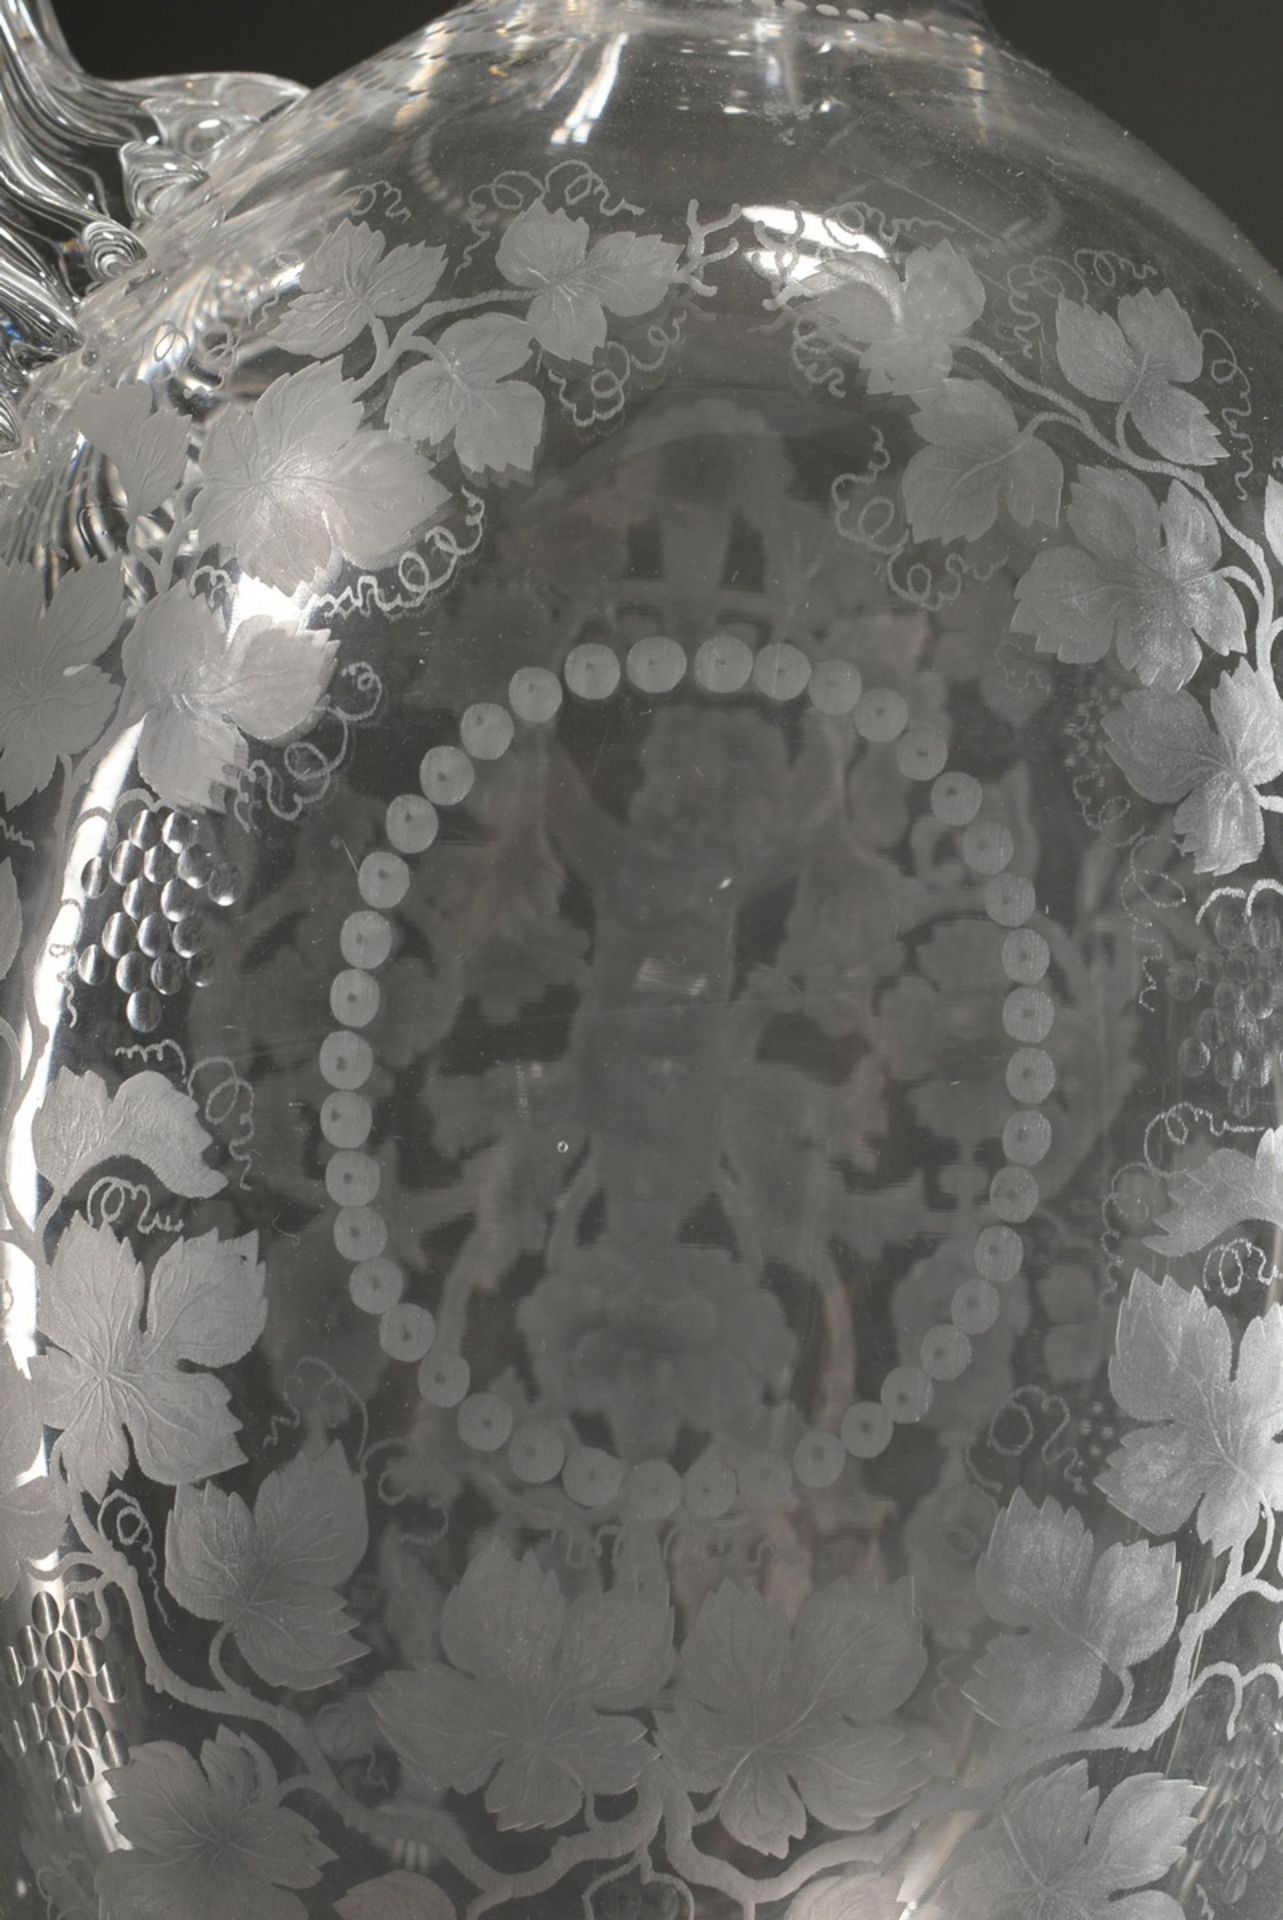 Reich beschliffene Kristall Kanne "Bacchusknabe in Weinlaub Kranz", um 1920, H. 25cm, Boden mit lei - Bild 3 aus 6